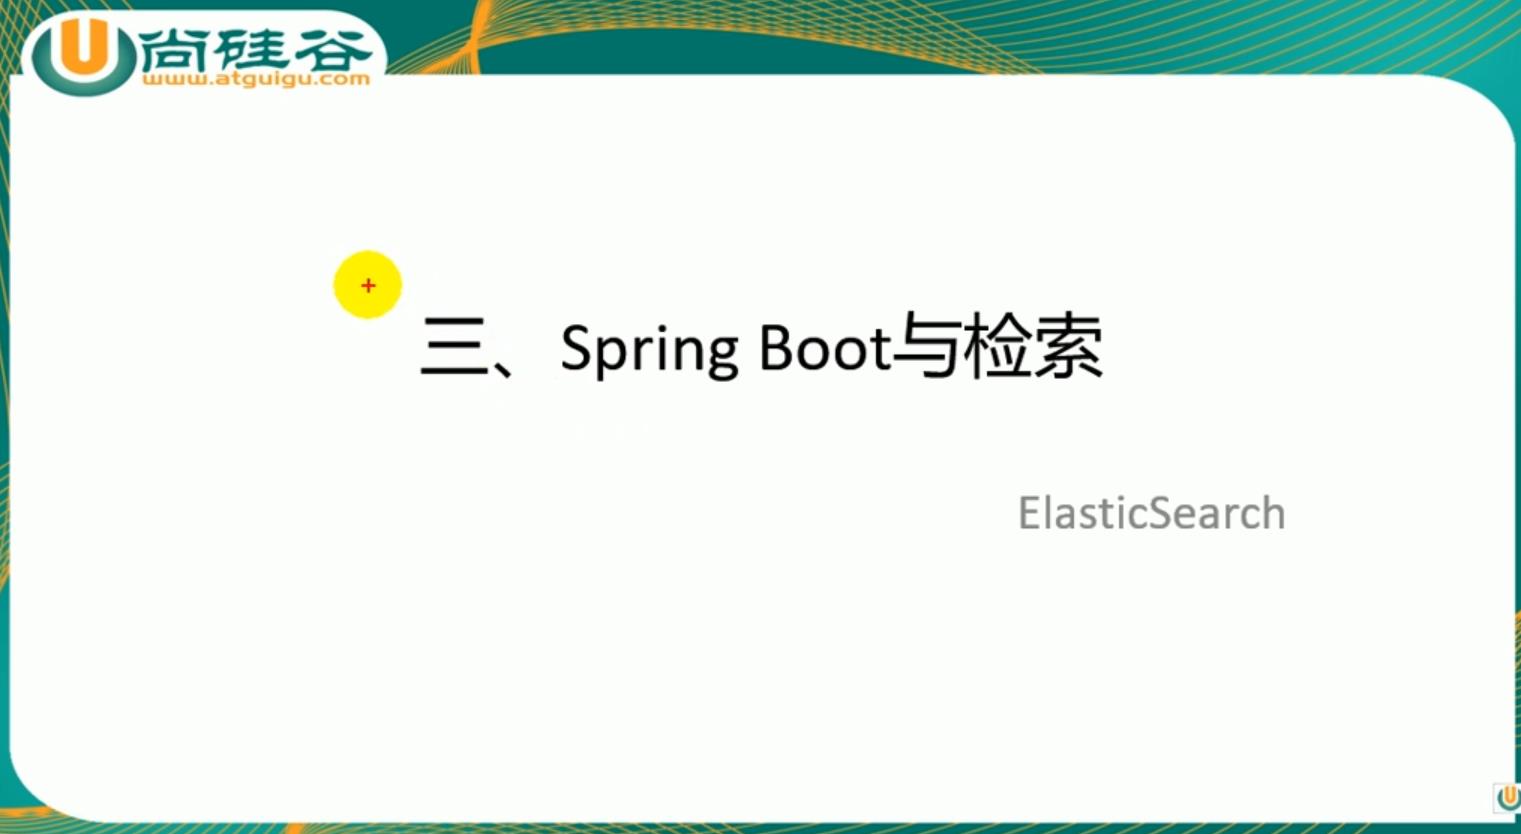 雷丰阳springboot之检索之elasticsearch整合 - 文章图片